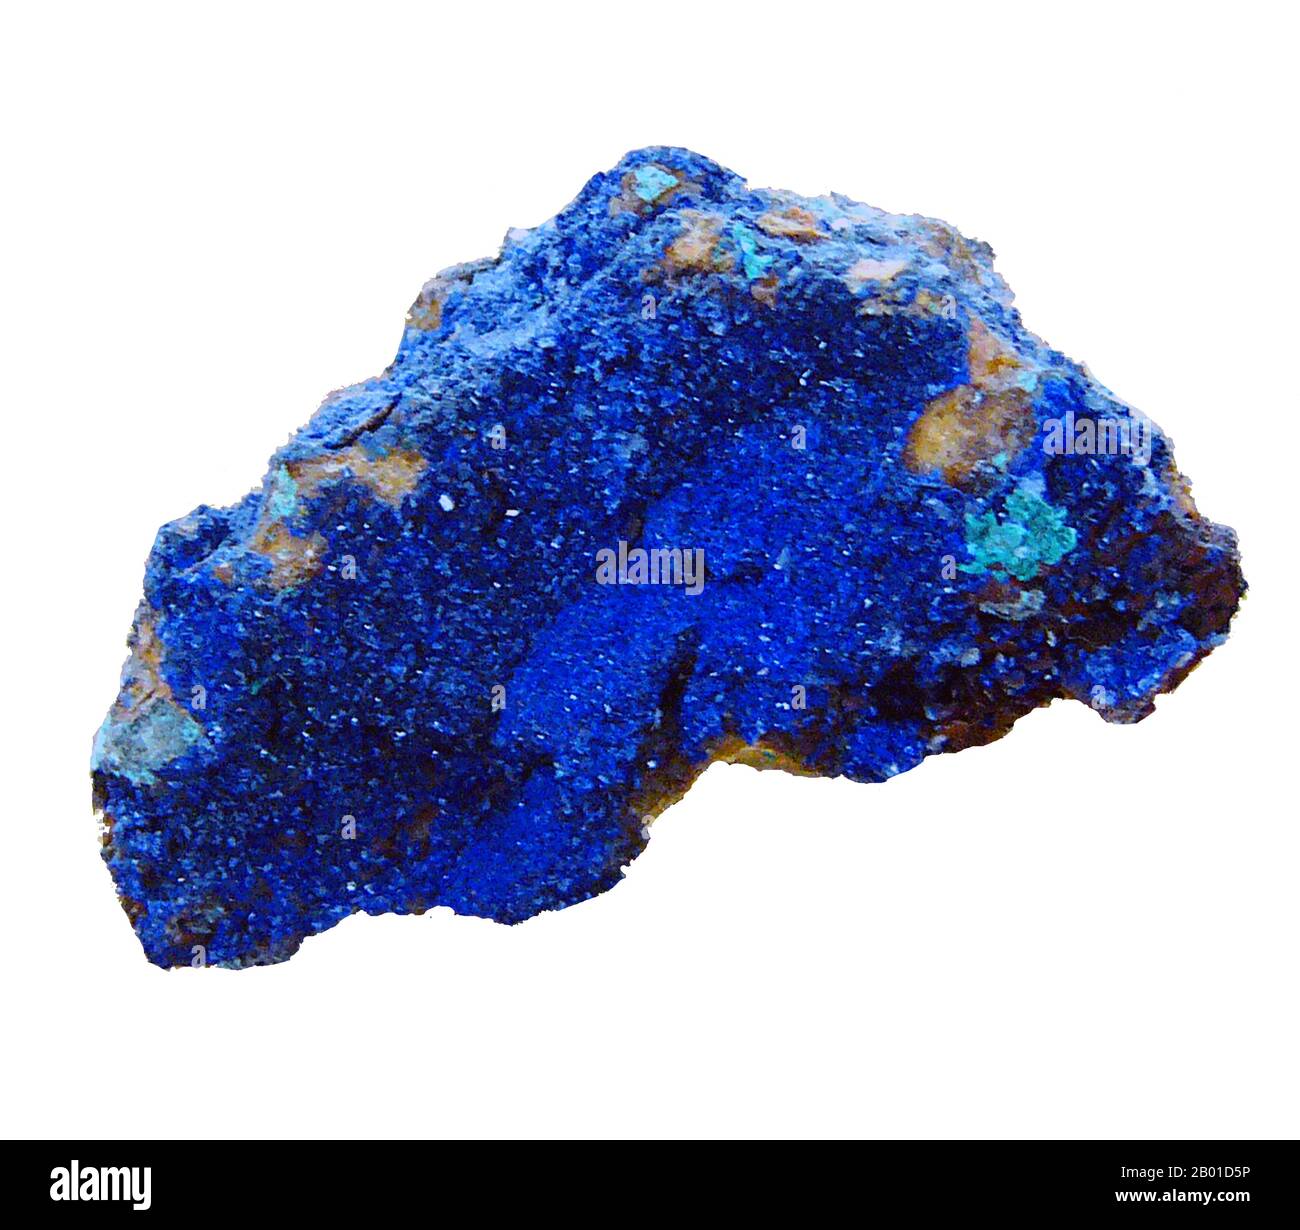 Afghanistan: Lapis Lazuli dalle montagne del Kush indù. Foto di Philippe Giabbanelli (CC BY-SA 3,0 License). Lapis lazuli (a volte abbreviato in lapis) è una pietra semi-preziosa relativamente rara che è stata apprezzata fin dall'antichità per il suo colore blu intenso. Lapis lazuli è stato raccolto dalle miniere nella provincia di Badakhshan in Afghanistan per oltre 6.000 anni e ci sono fonti che si trovano ad est come la regione intorno al lago Baikal in Siberia. Il commercio della pietra è abbastanza antico affinchè i monili del lapis siano stati trovati nei siti egiziani e sumeriani predynastic antichi. Foto Stock